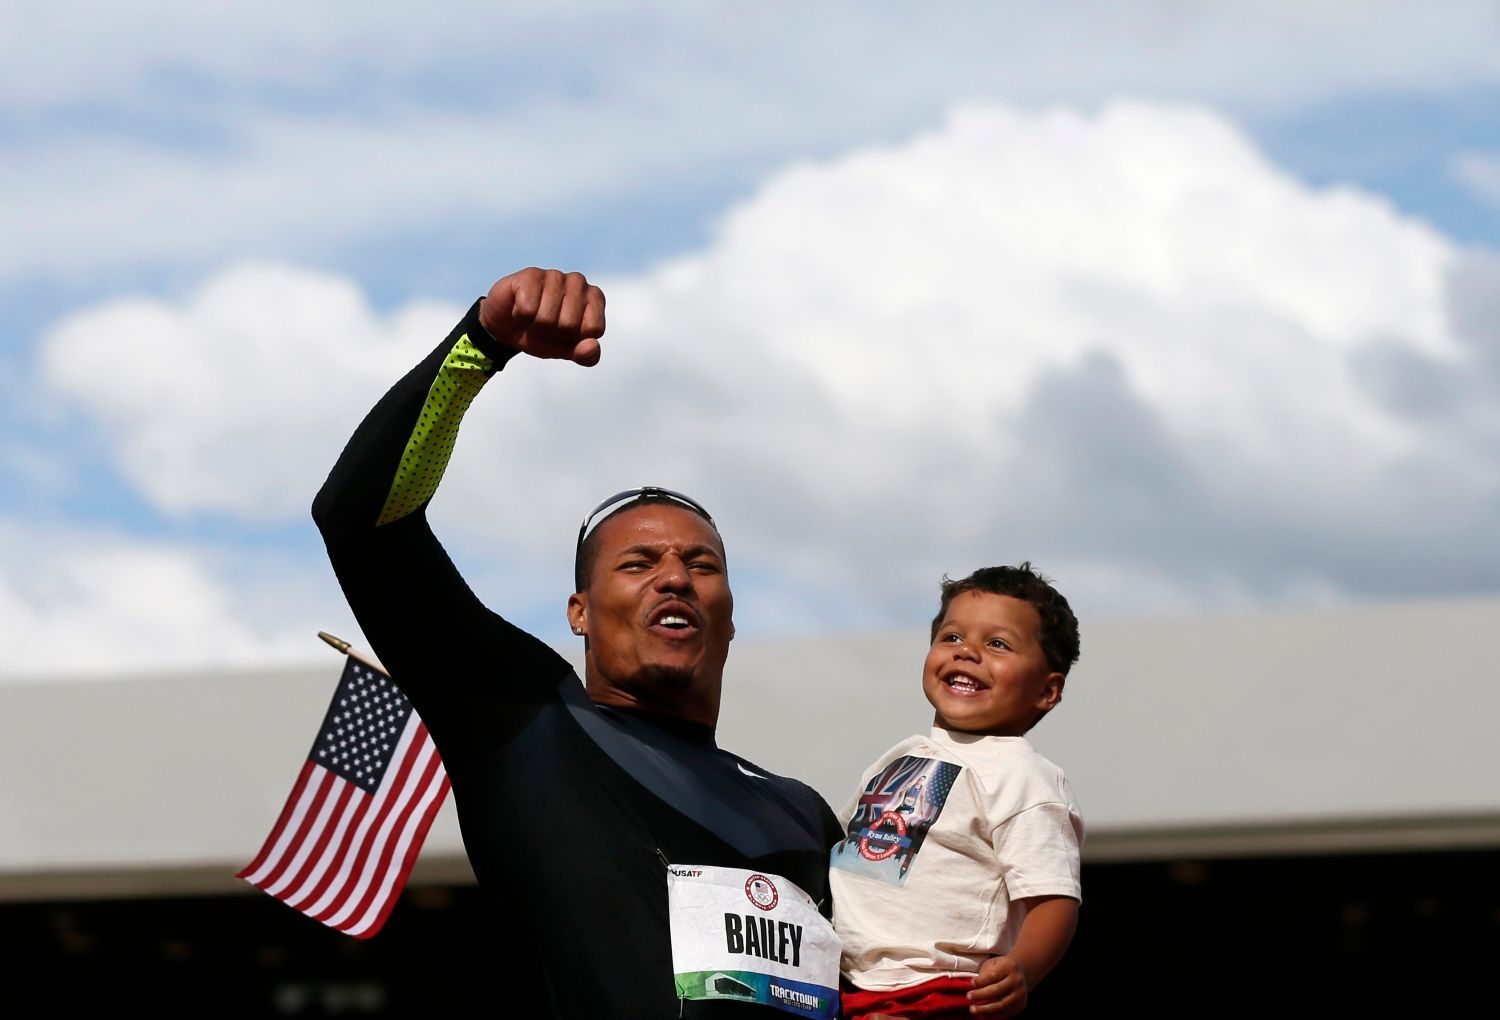 Sprinter Ryan Bailey slaví třetí místo po závodu na 100 metrů během americké kvalifikace v Eugene 2012 společně se synem Tyreem